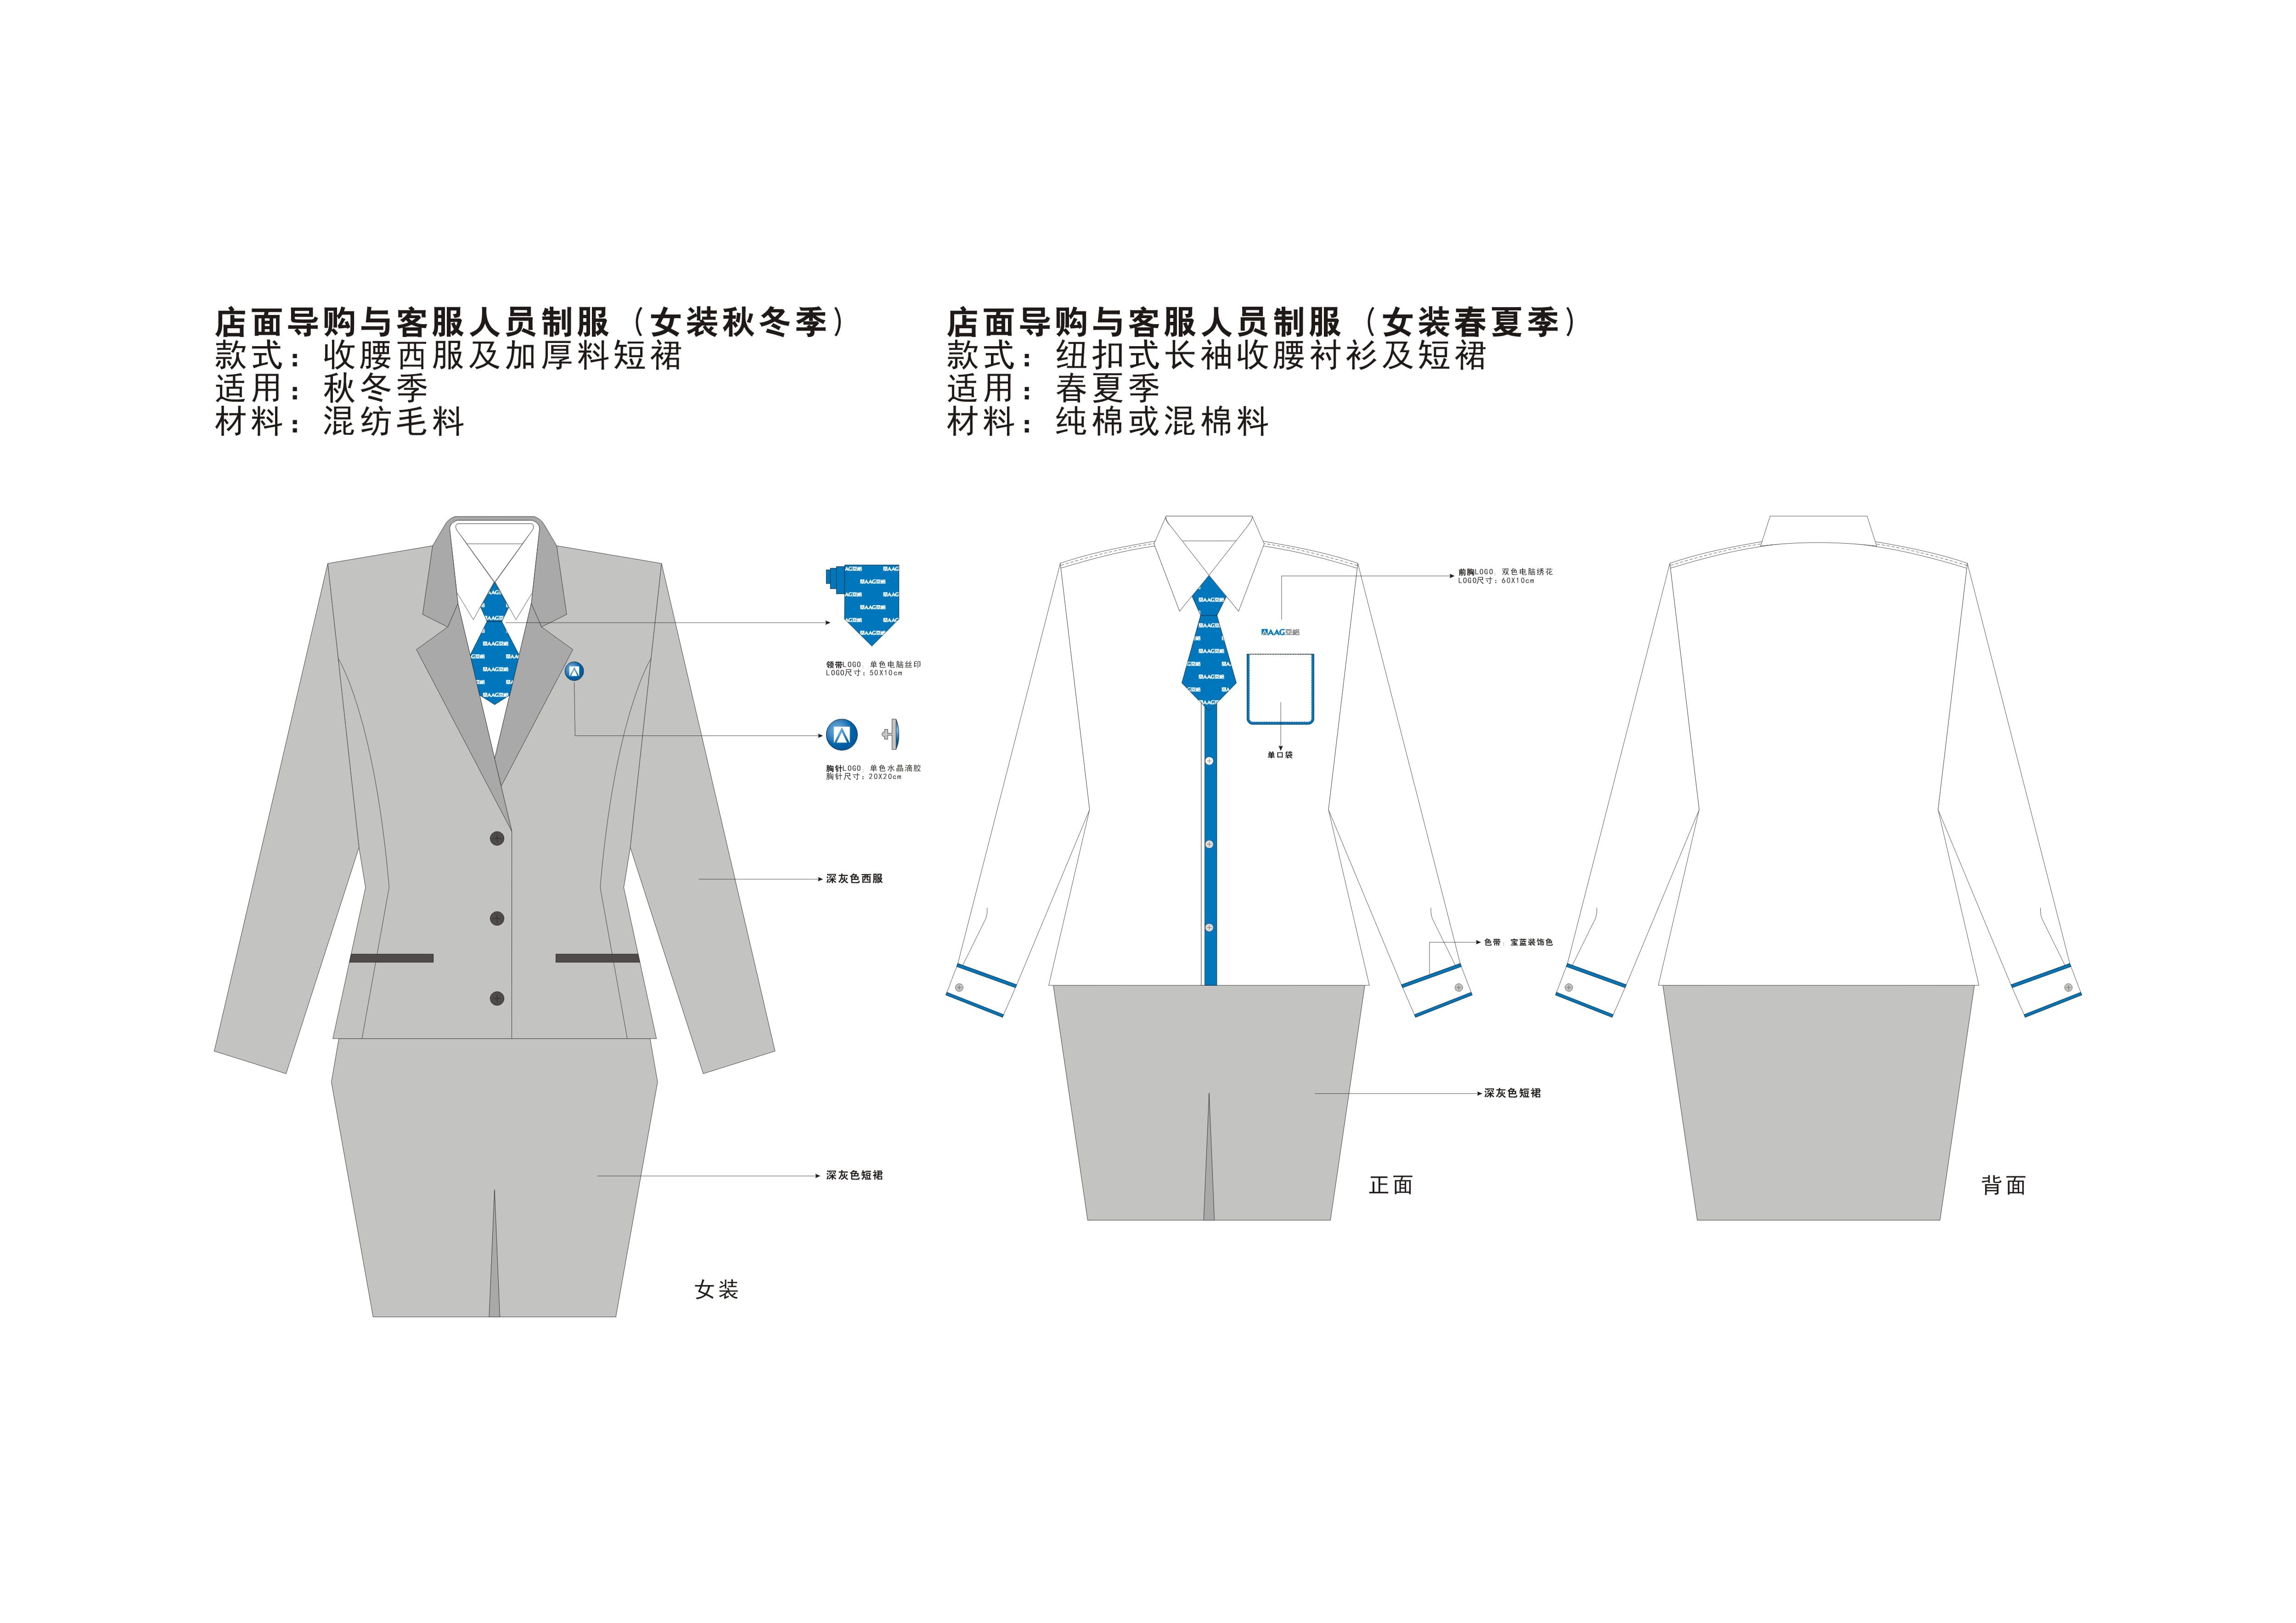 Guide uniform 2